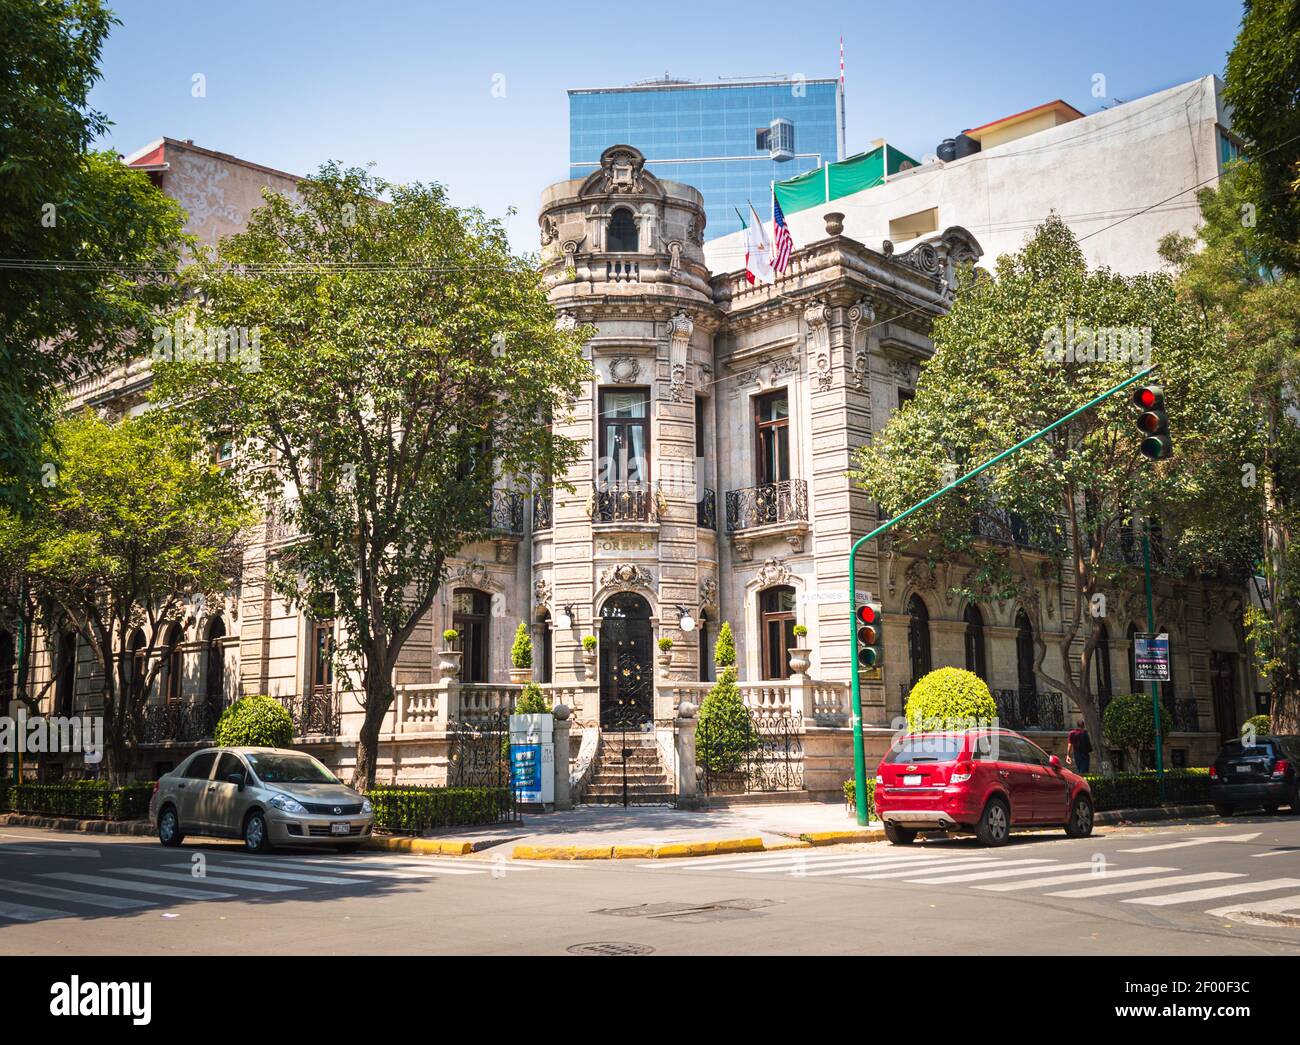 Historisches Gebäude in Mexiko-Stadt namens Embajada de Forever, in dem sich die Büros der Marke Forever Living befinden. Stockfoto